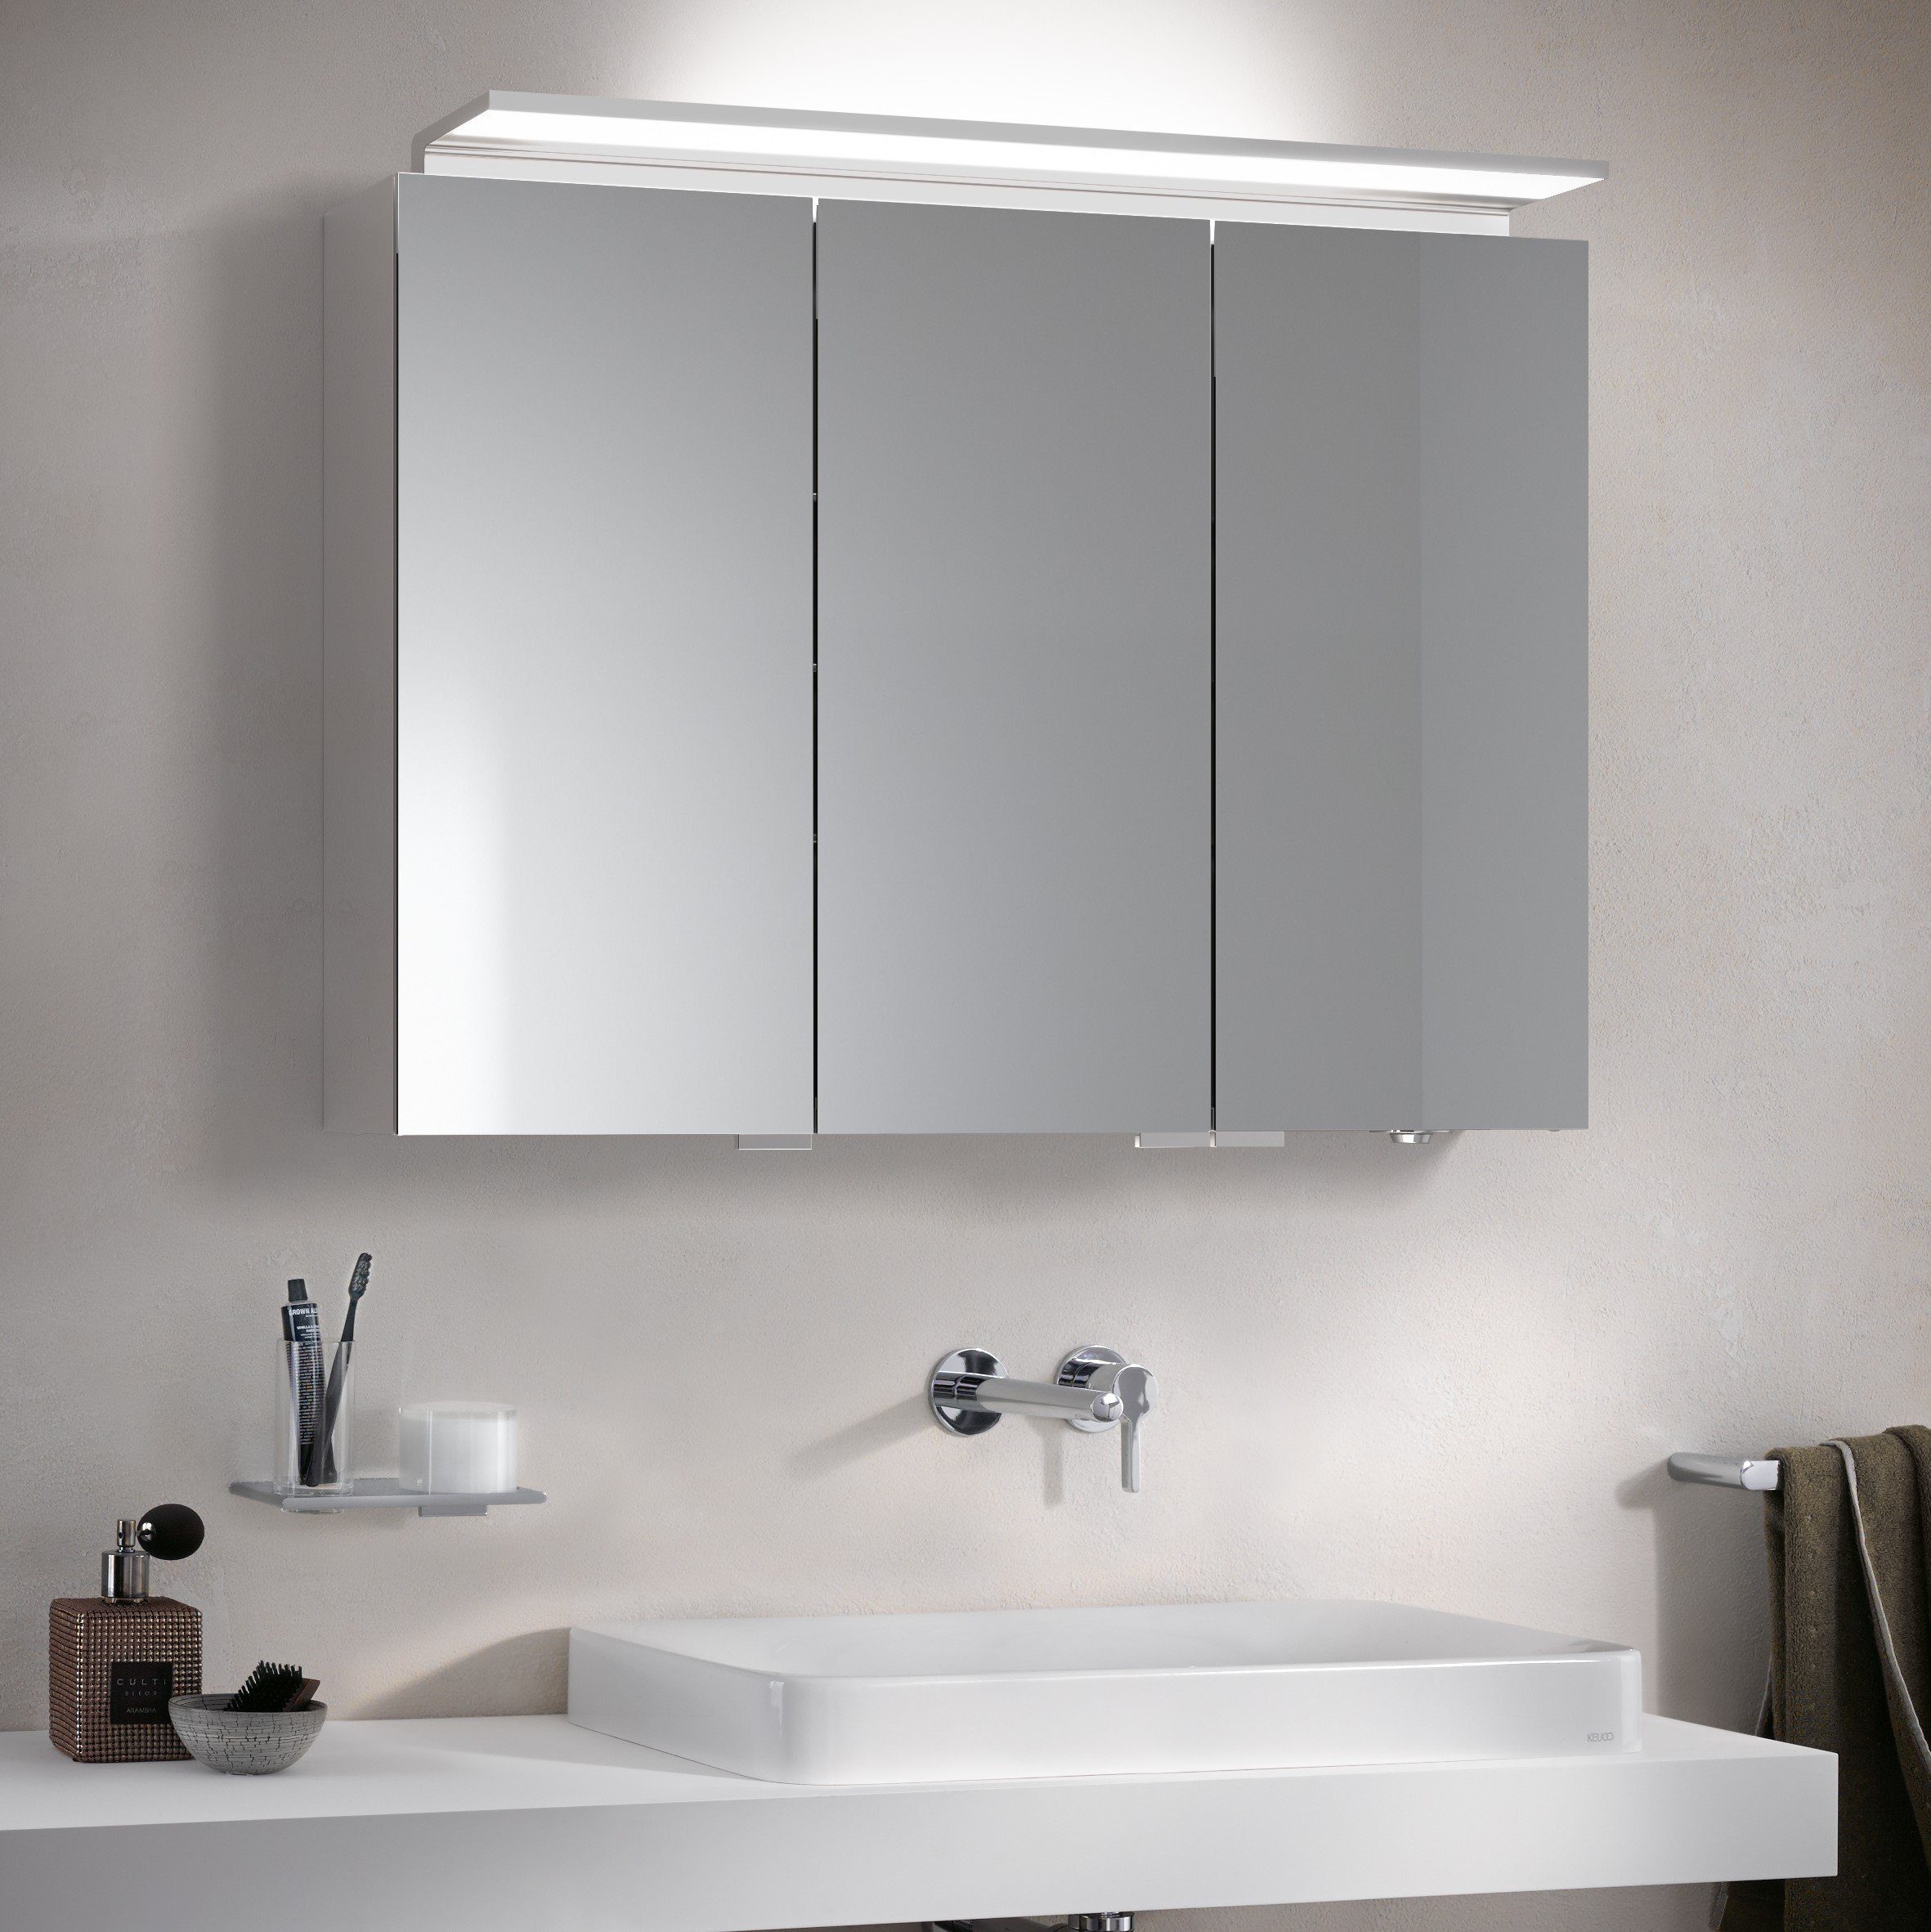 Keuco Spiegelschrank Royal L1 (Badezimmerspiegelschrank mit Beleuchtung  LED), mit Steckdose, inkl. Wandbeleuchtung, verspiegelter Korpus, 3-türig,  100 cm breit